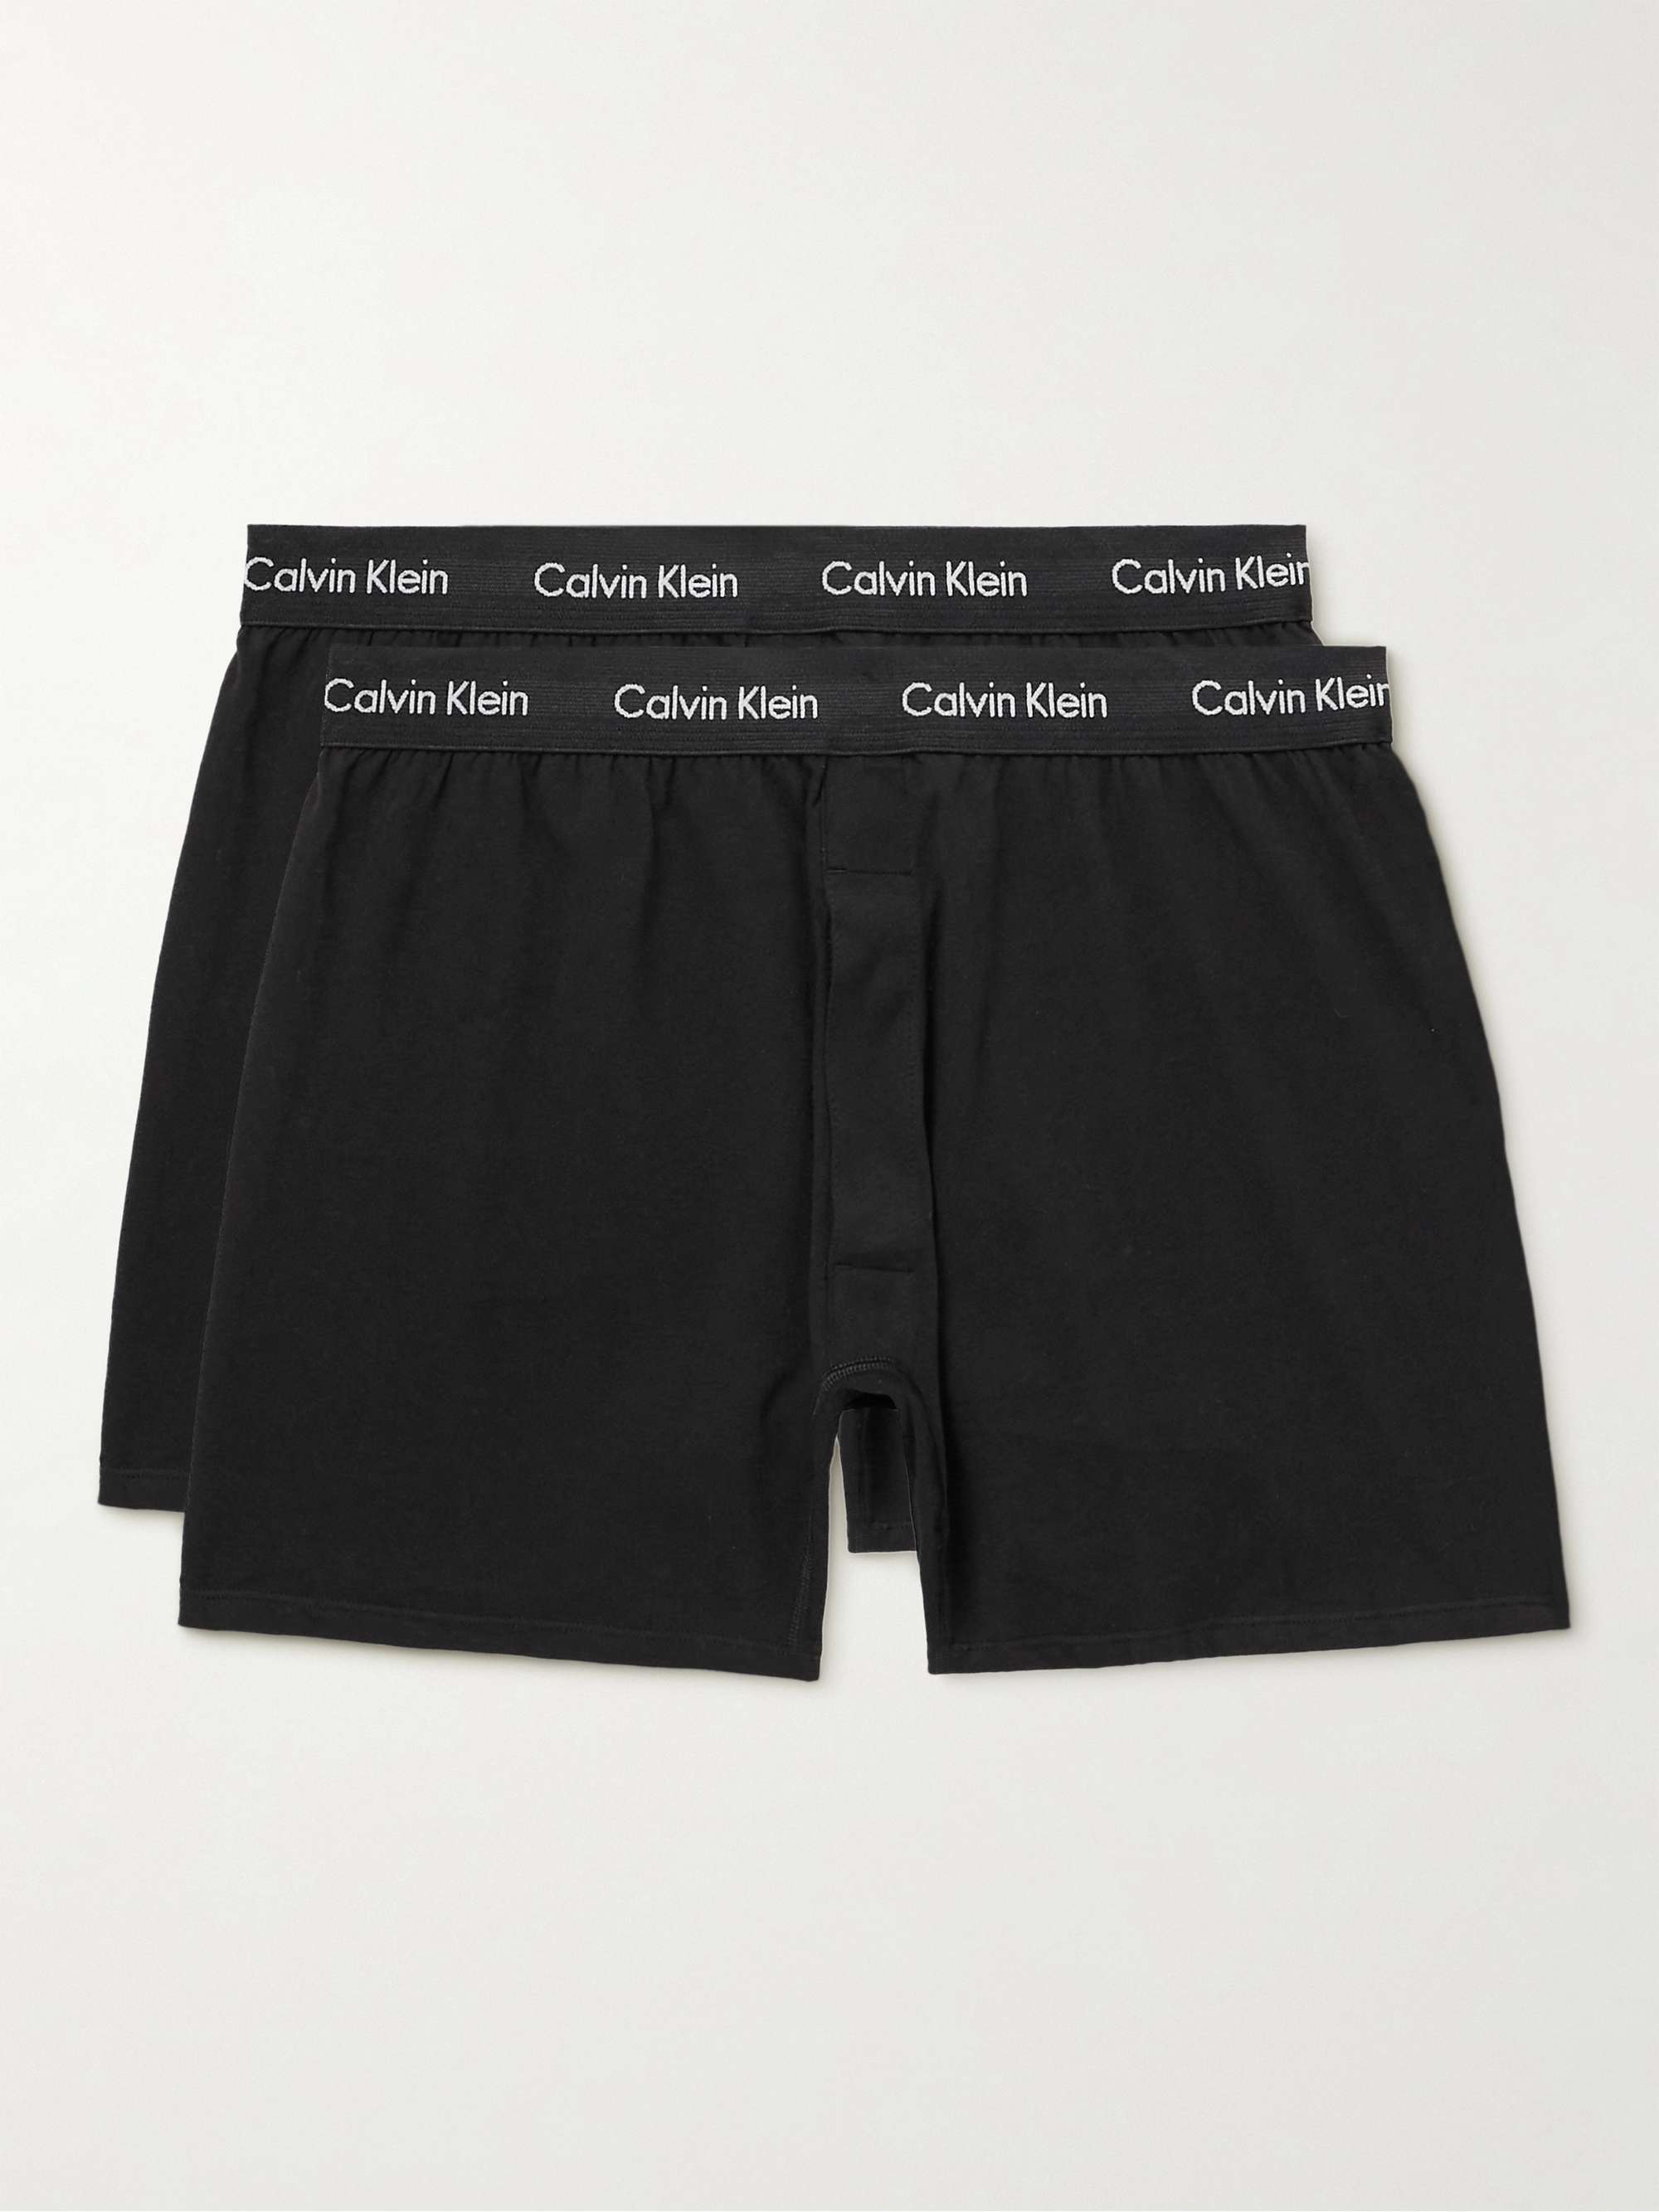 CALVIN KLEIN UNDERWEAR Two-Pack Stretch-Cotton Boxer Shorts | MR PORTER